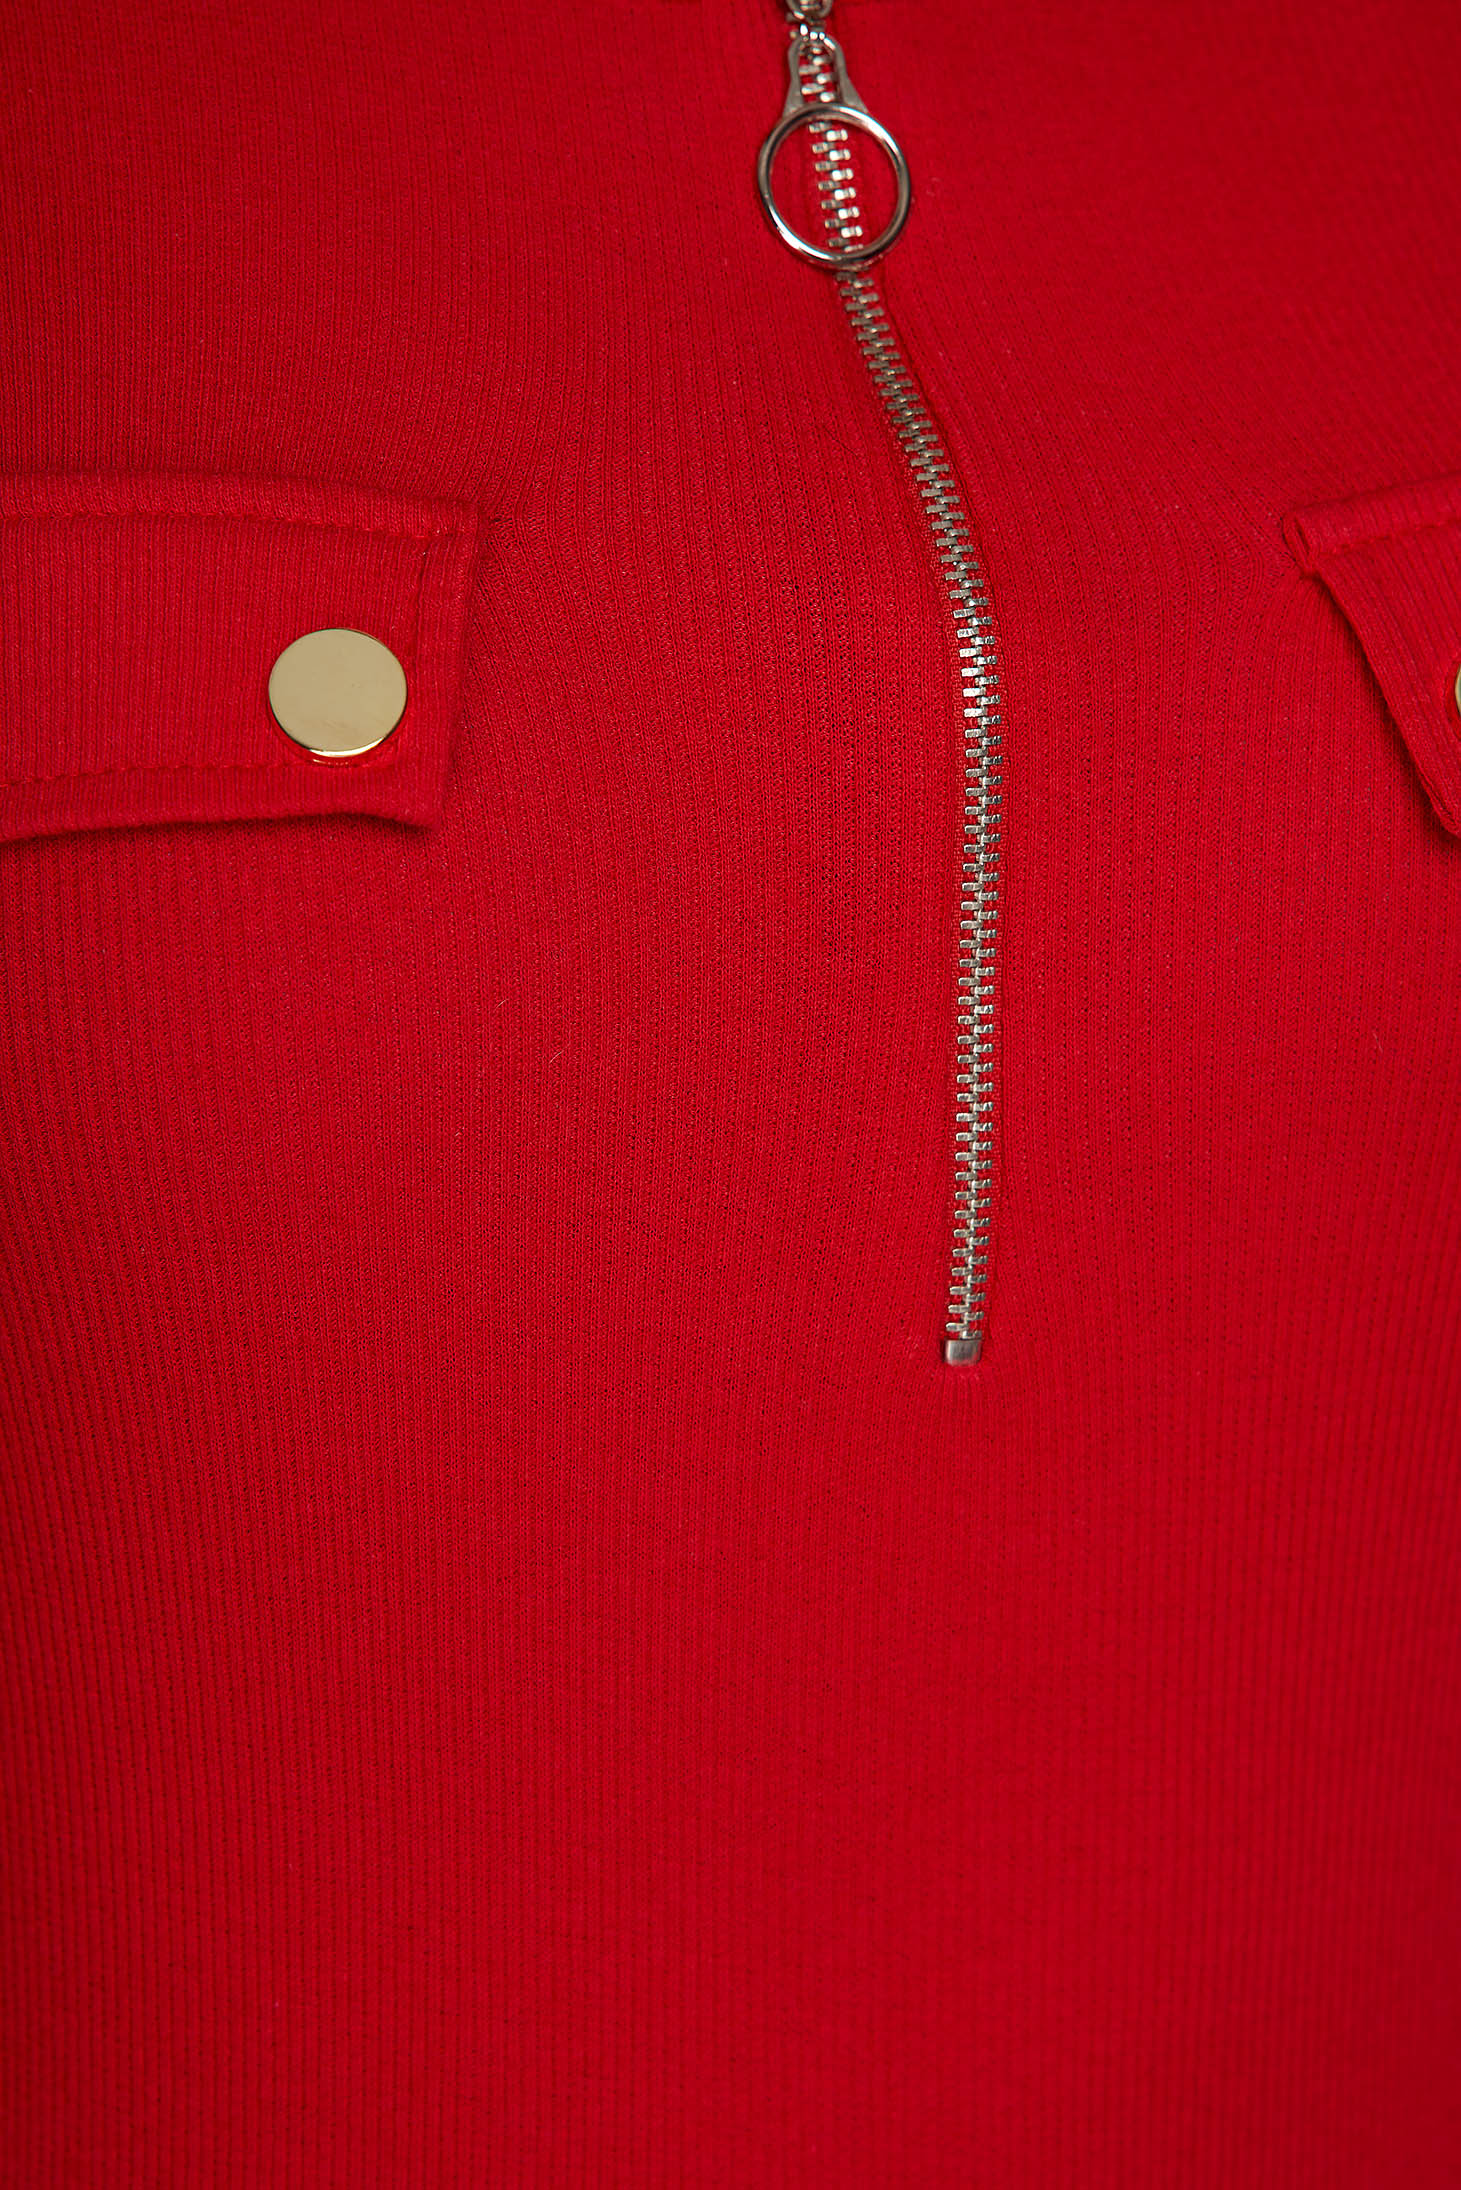 Bluza dama SunShine rosie mulata din material reiat din bumbac accesorizata cu fermoar si cu nasturi aurii 4 - StarShinerS.ro